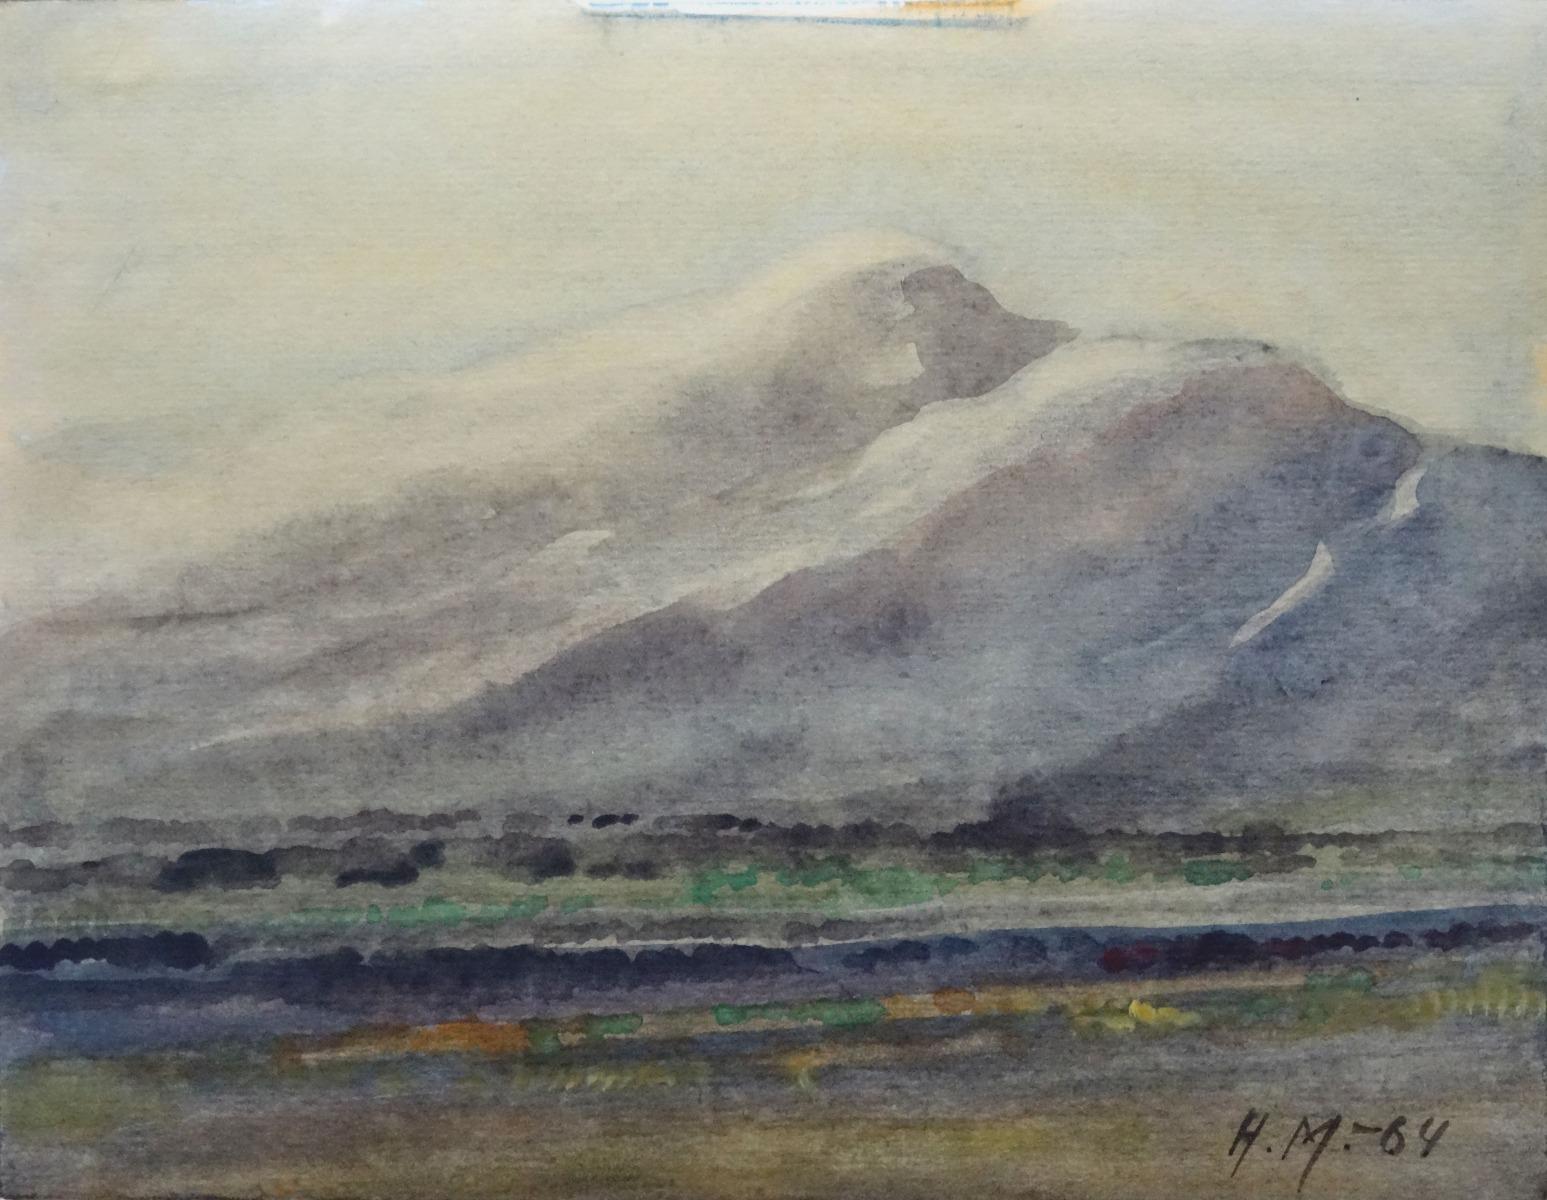 Herberts Mangolds Landscape Art - Landscape  1964, watercolor on paper, 20.5x26.5 cm